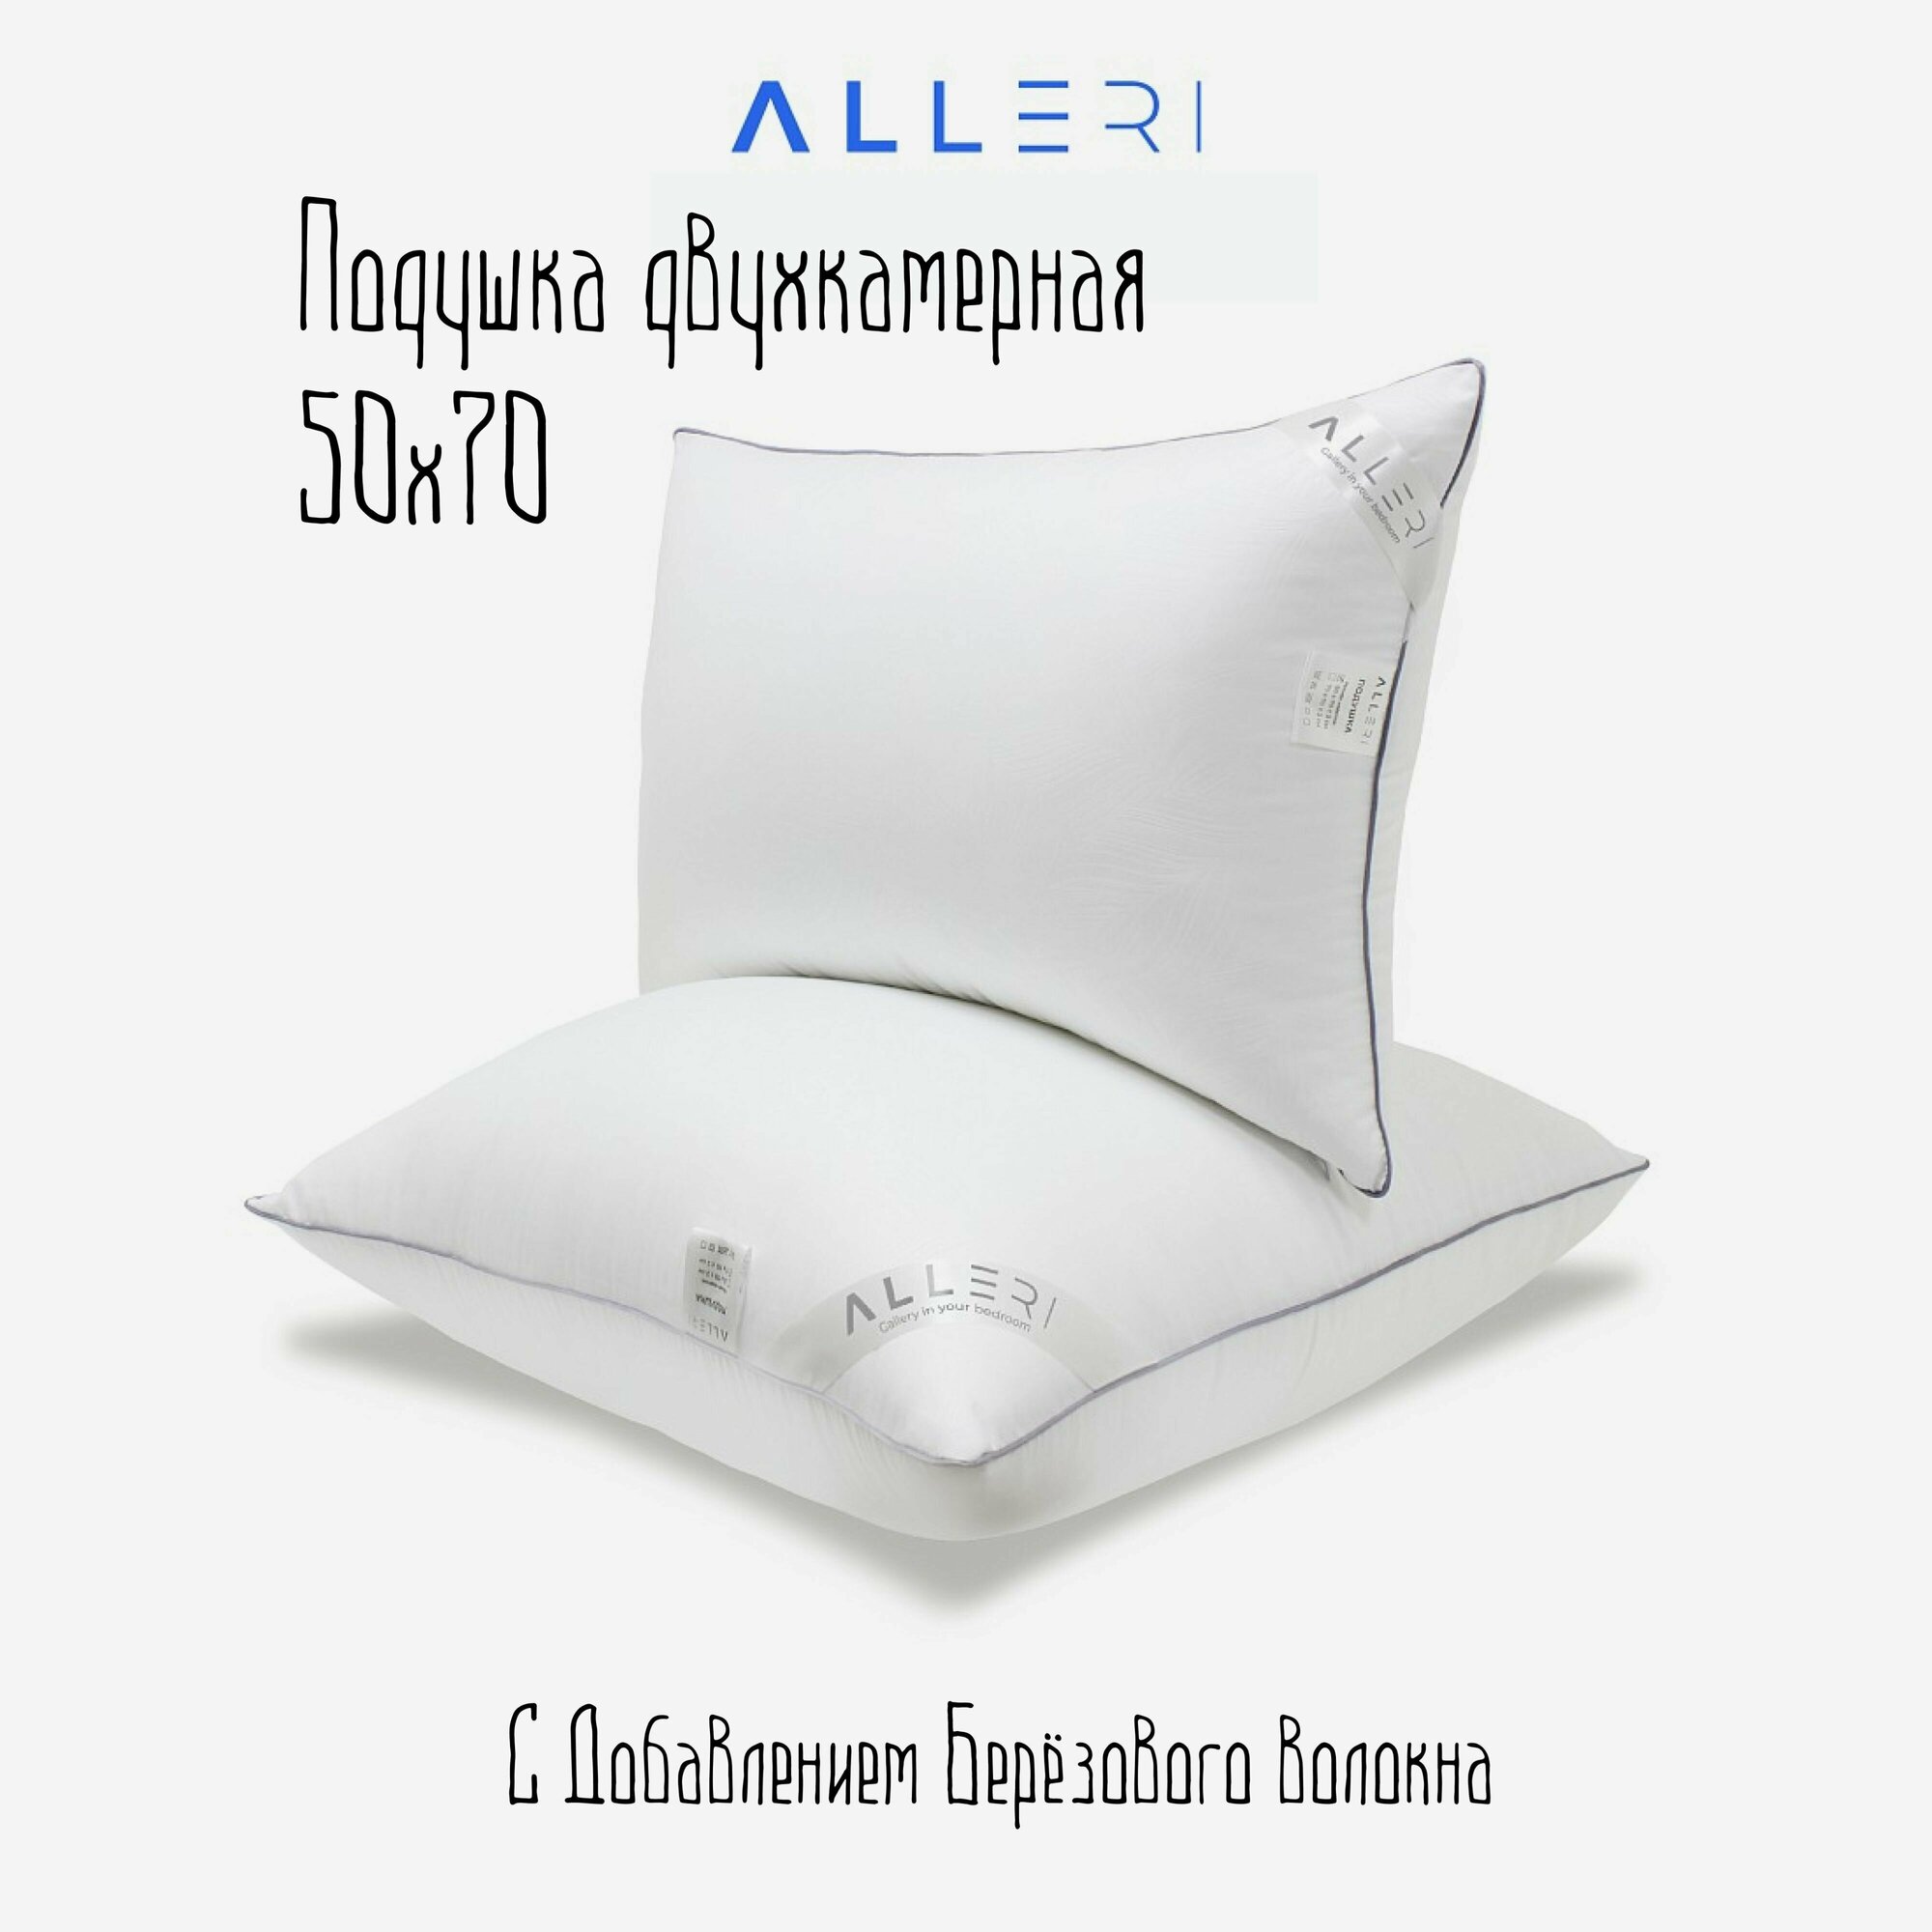 Подушка для сна, Низкая жесткость 50х70 см, Двухкамерная, Alleri - фотография № 1